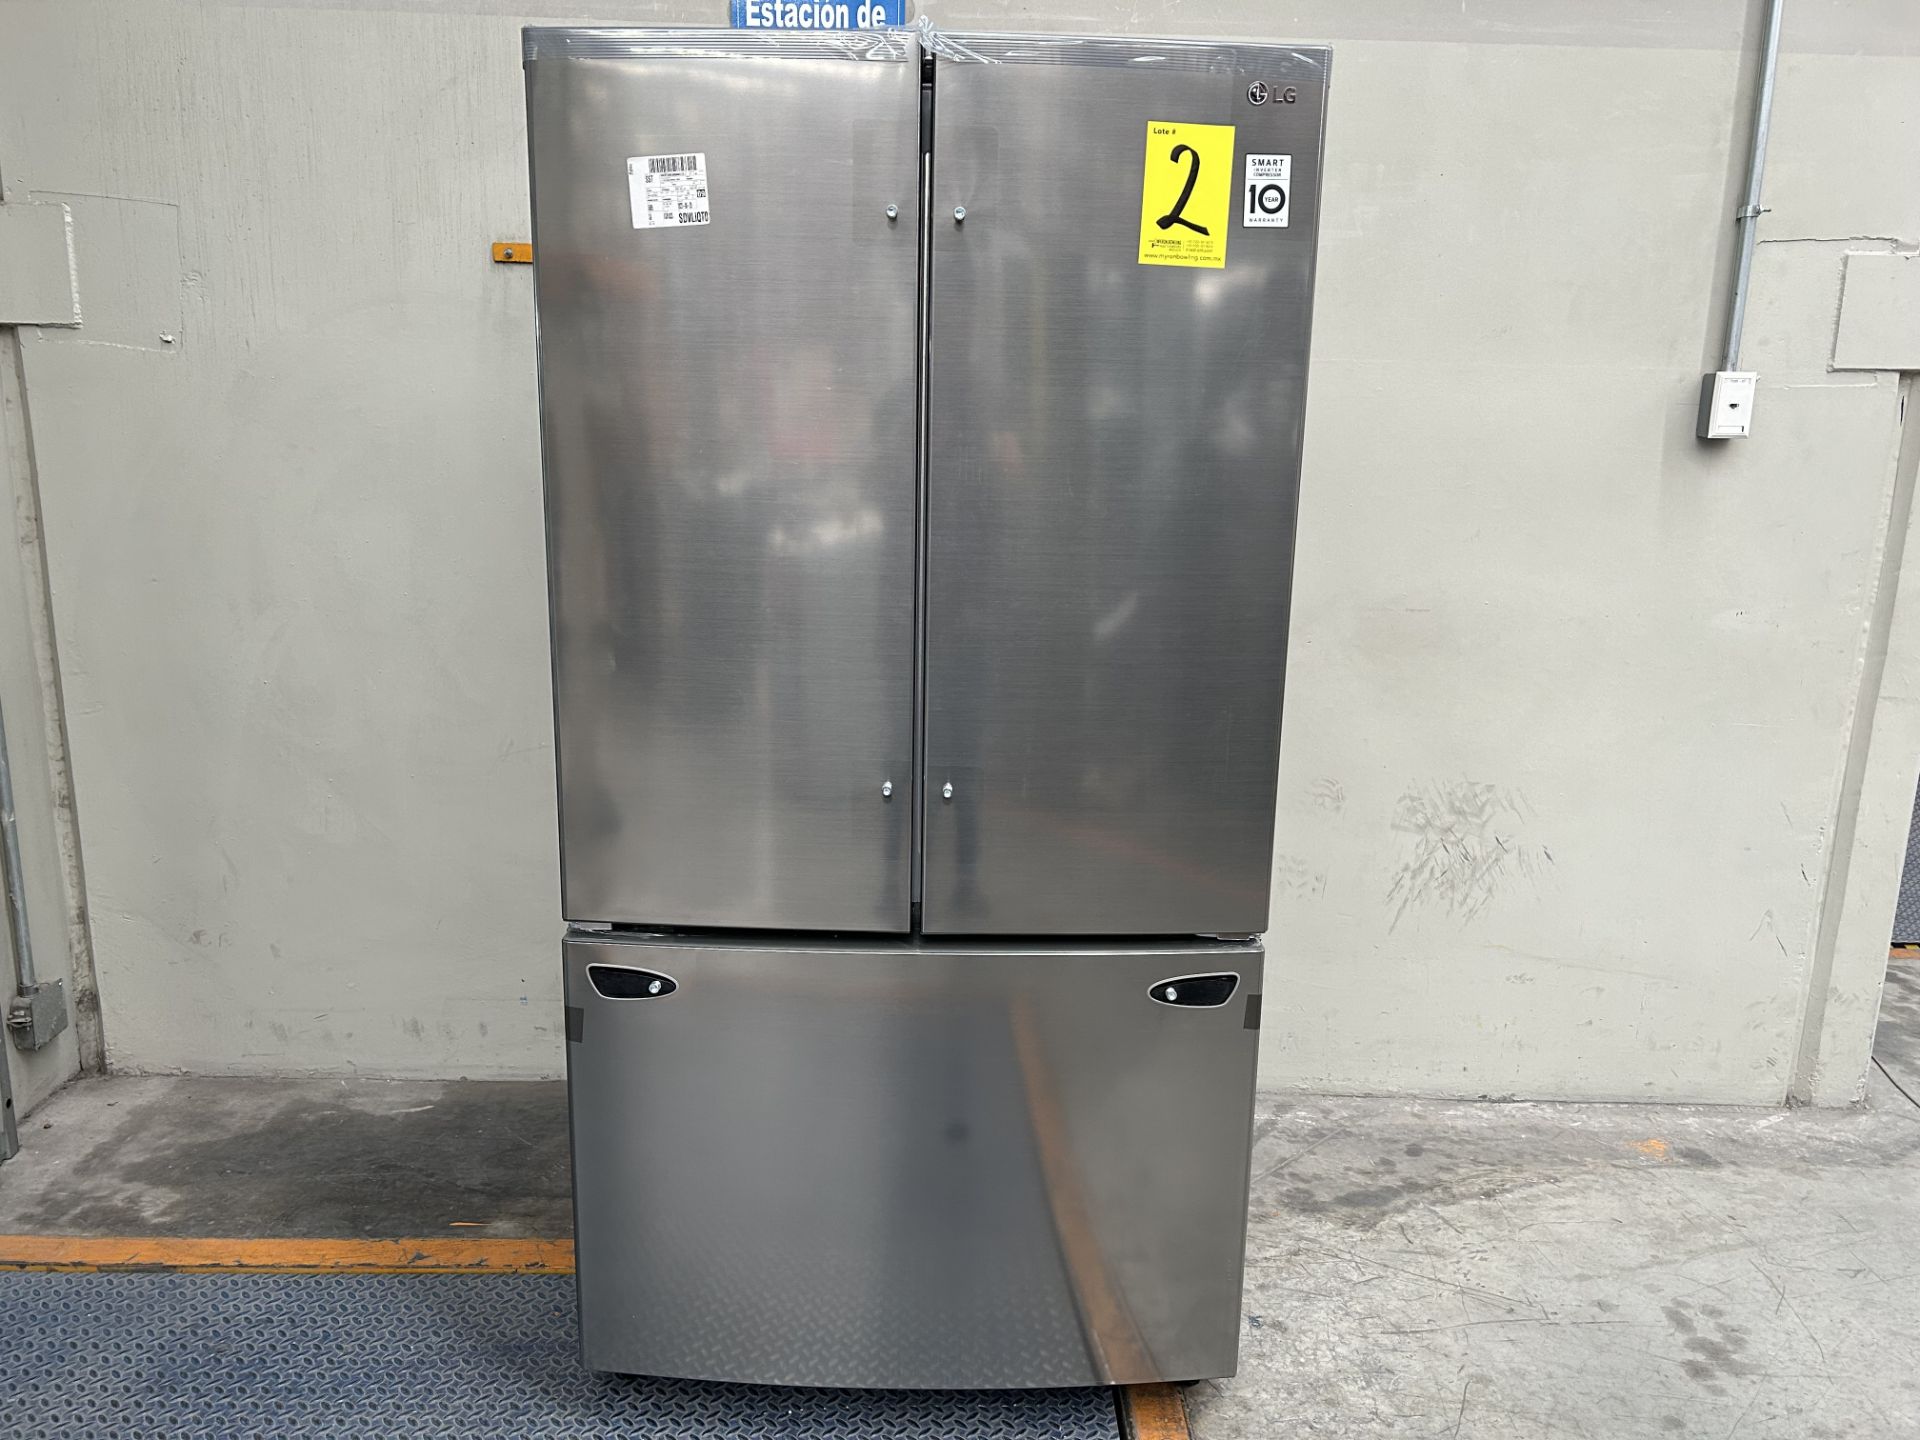 (NUEVO) Lote de 1 Refrigerador Marca LG, Modelo GM29BIP, Serie 16779, Color GRIS